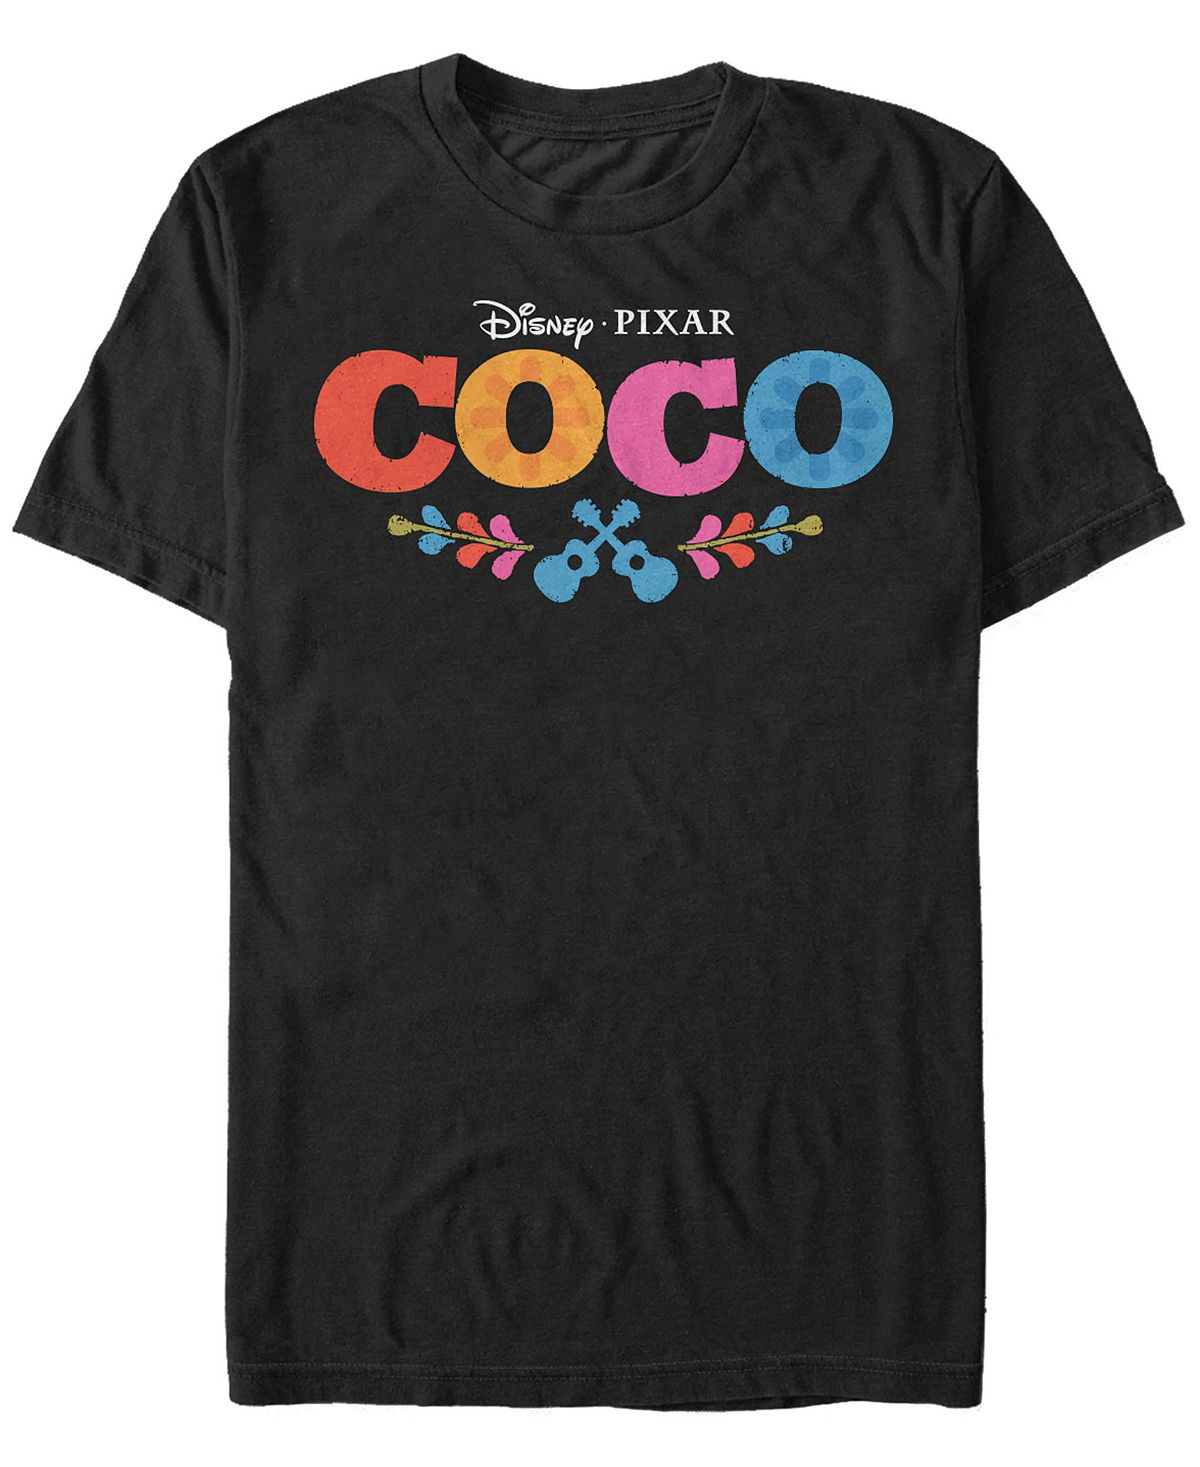 Мужская футболка с логотипом coco movie disney pixar, футболка с коротким рукавом Fifth Sun, черный